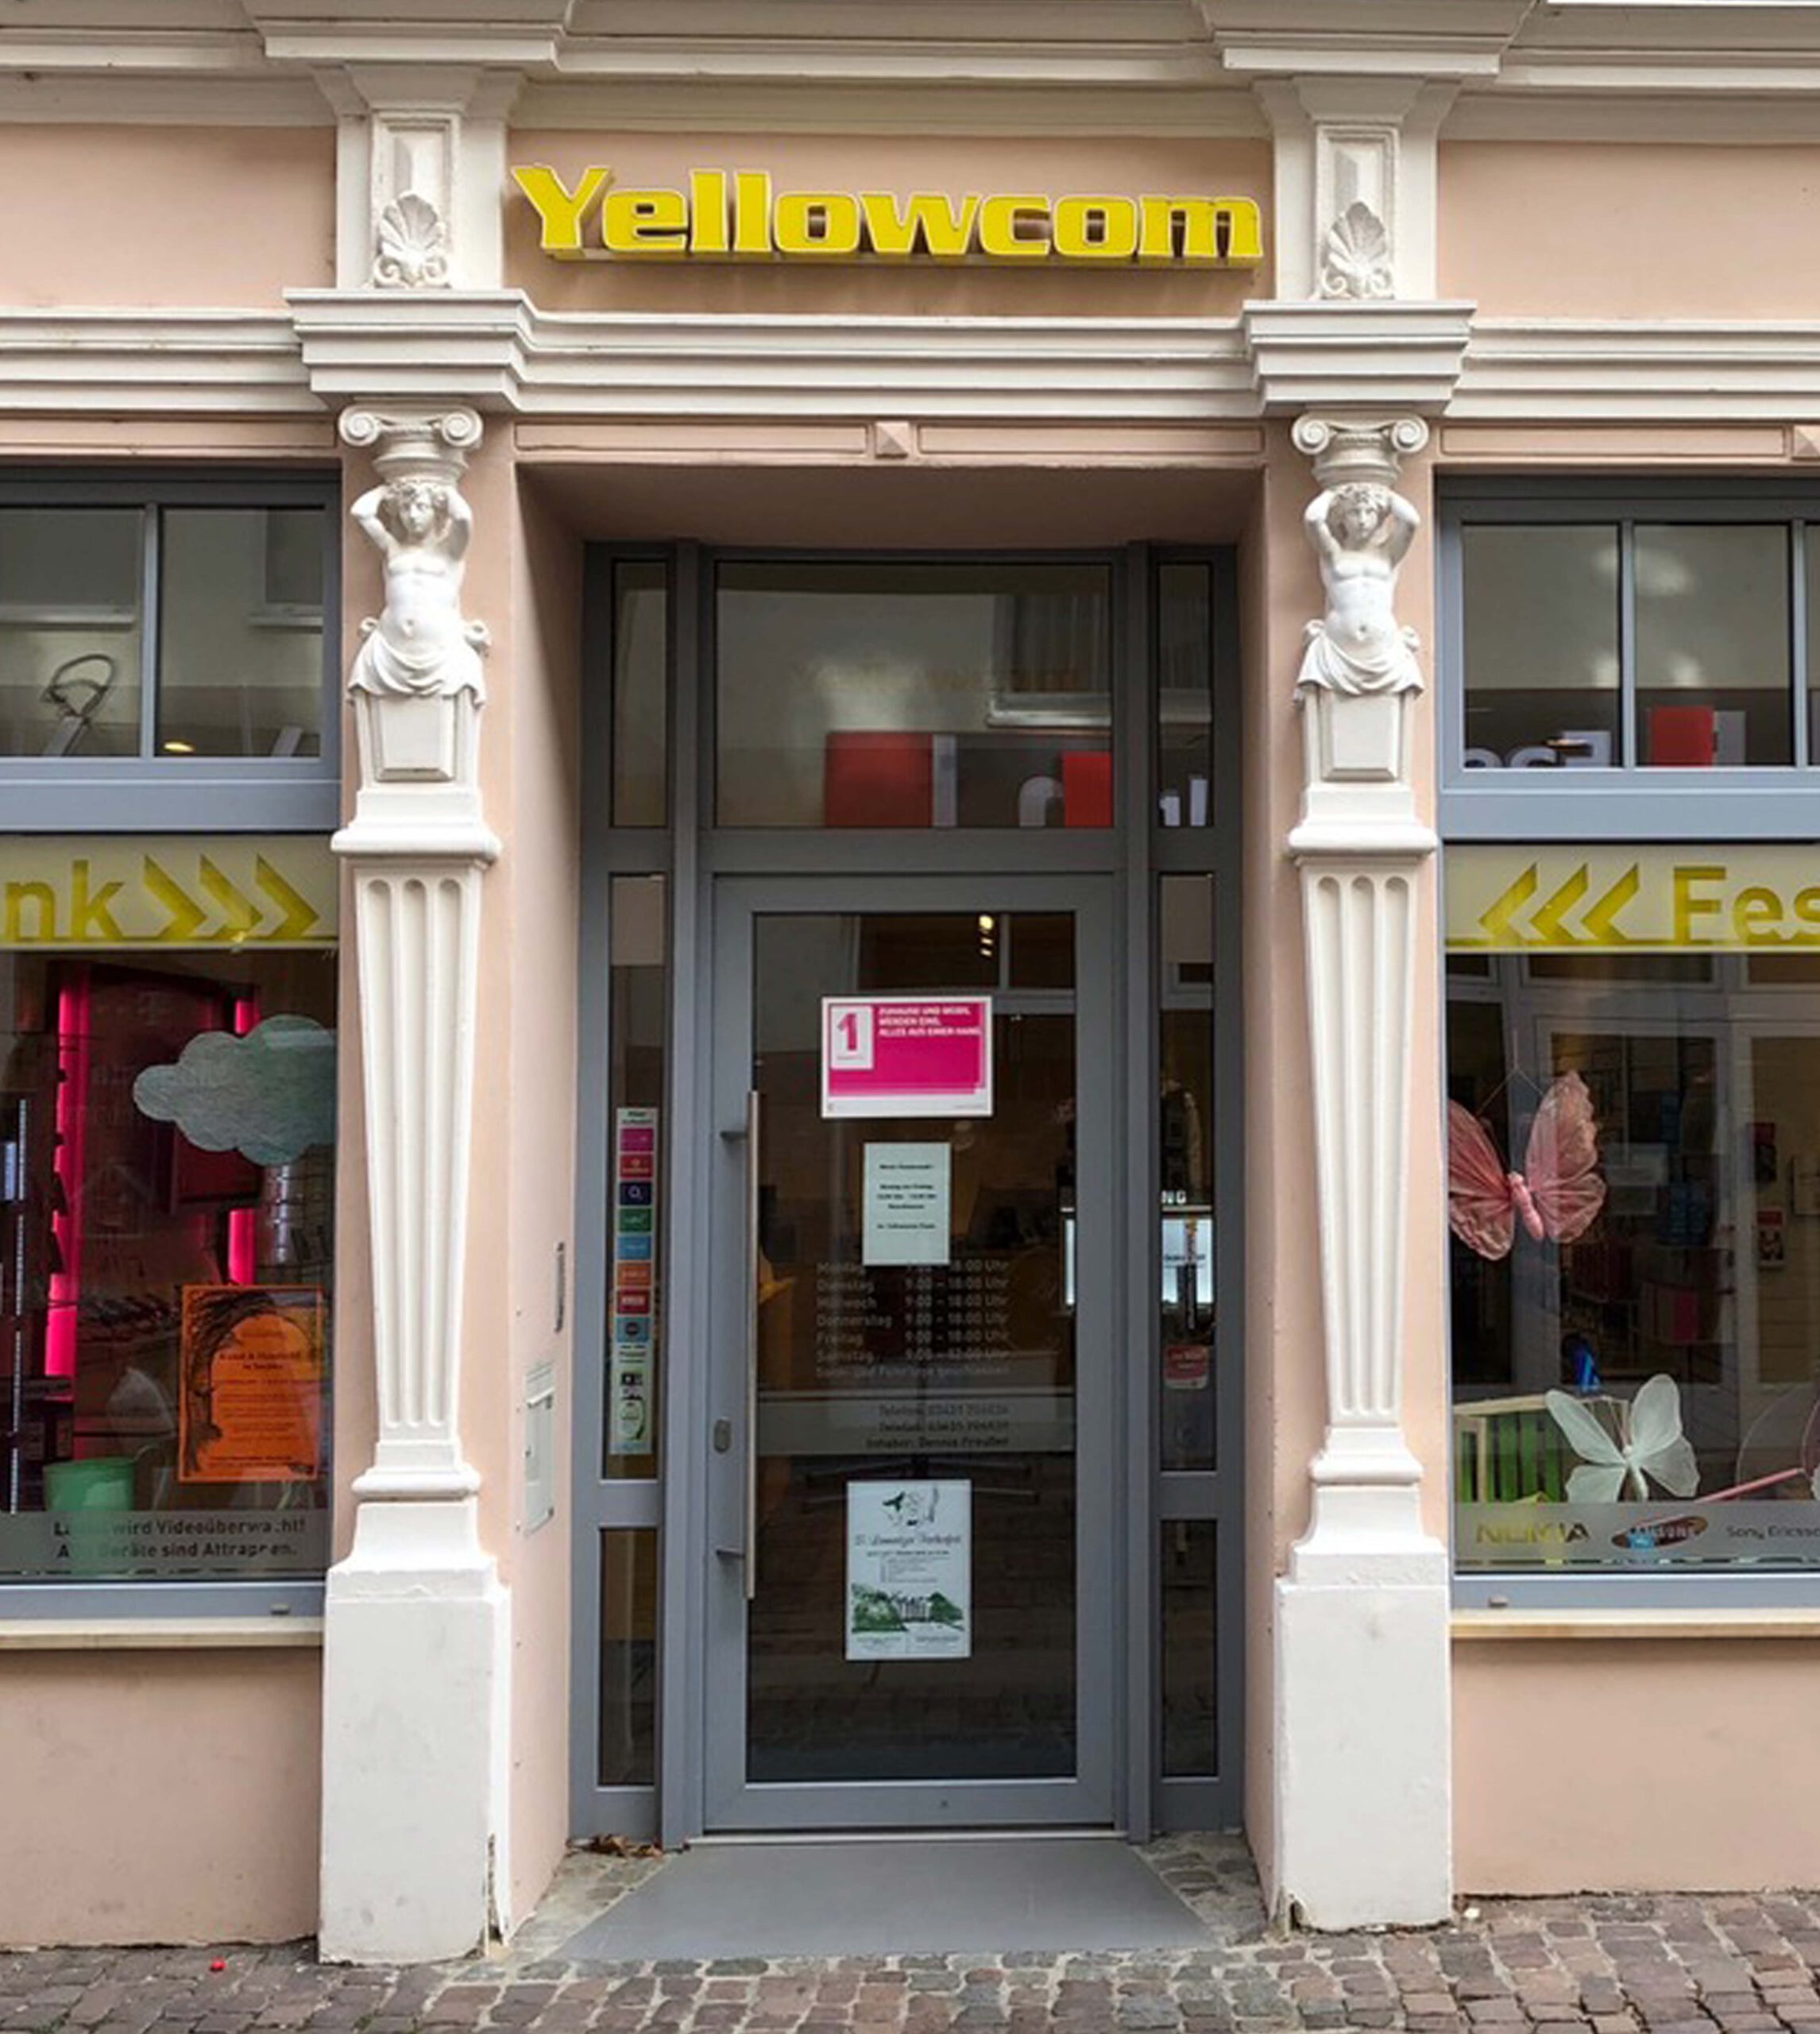 Yellowcom I Ihr Telekommunikationsdienstleister in Oschatz und Döbeln